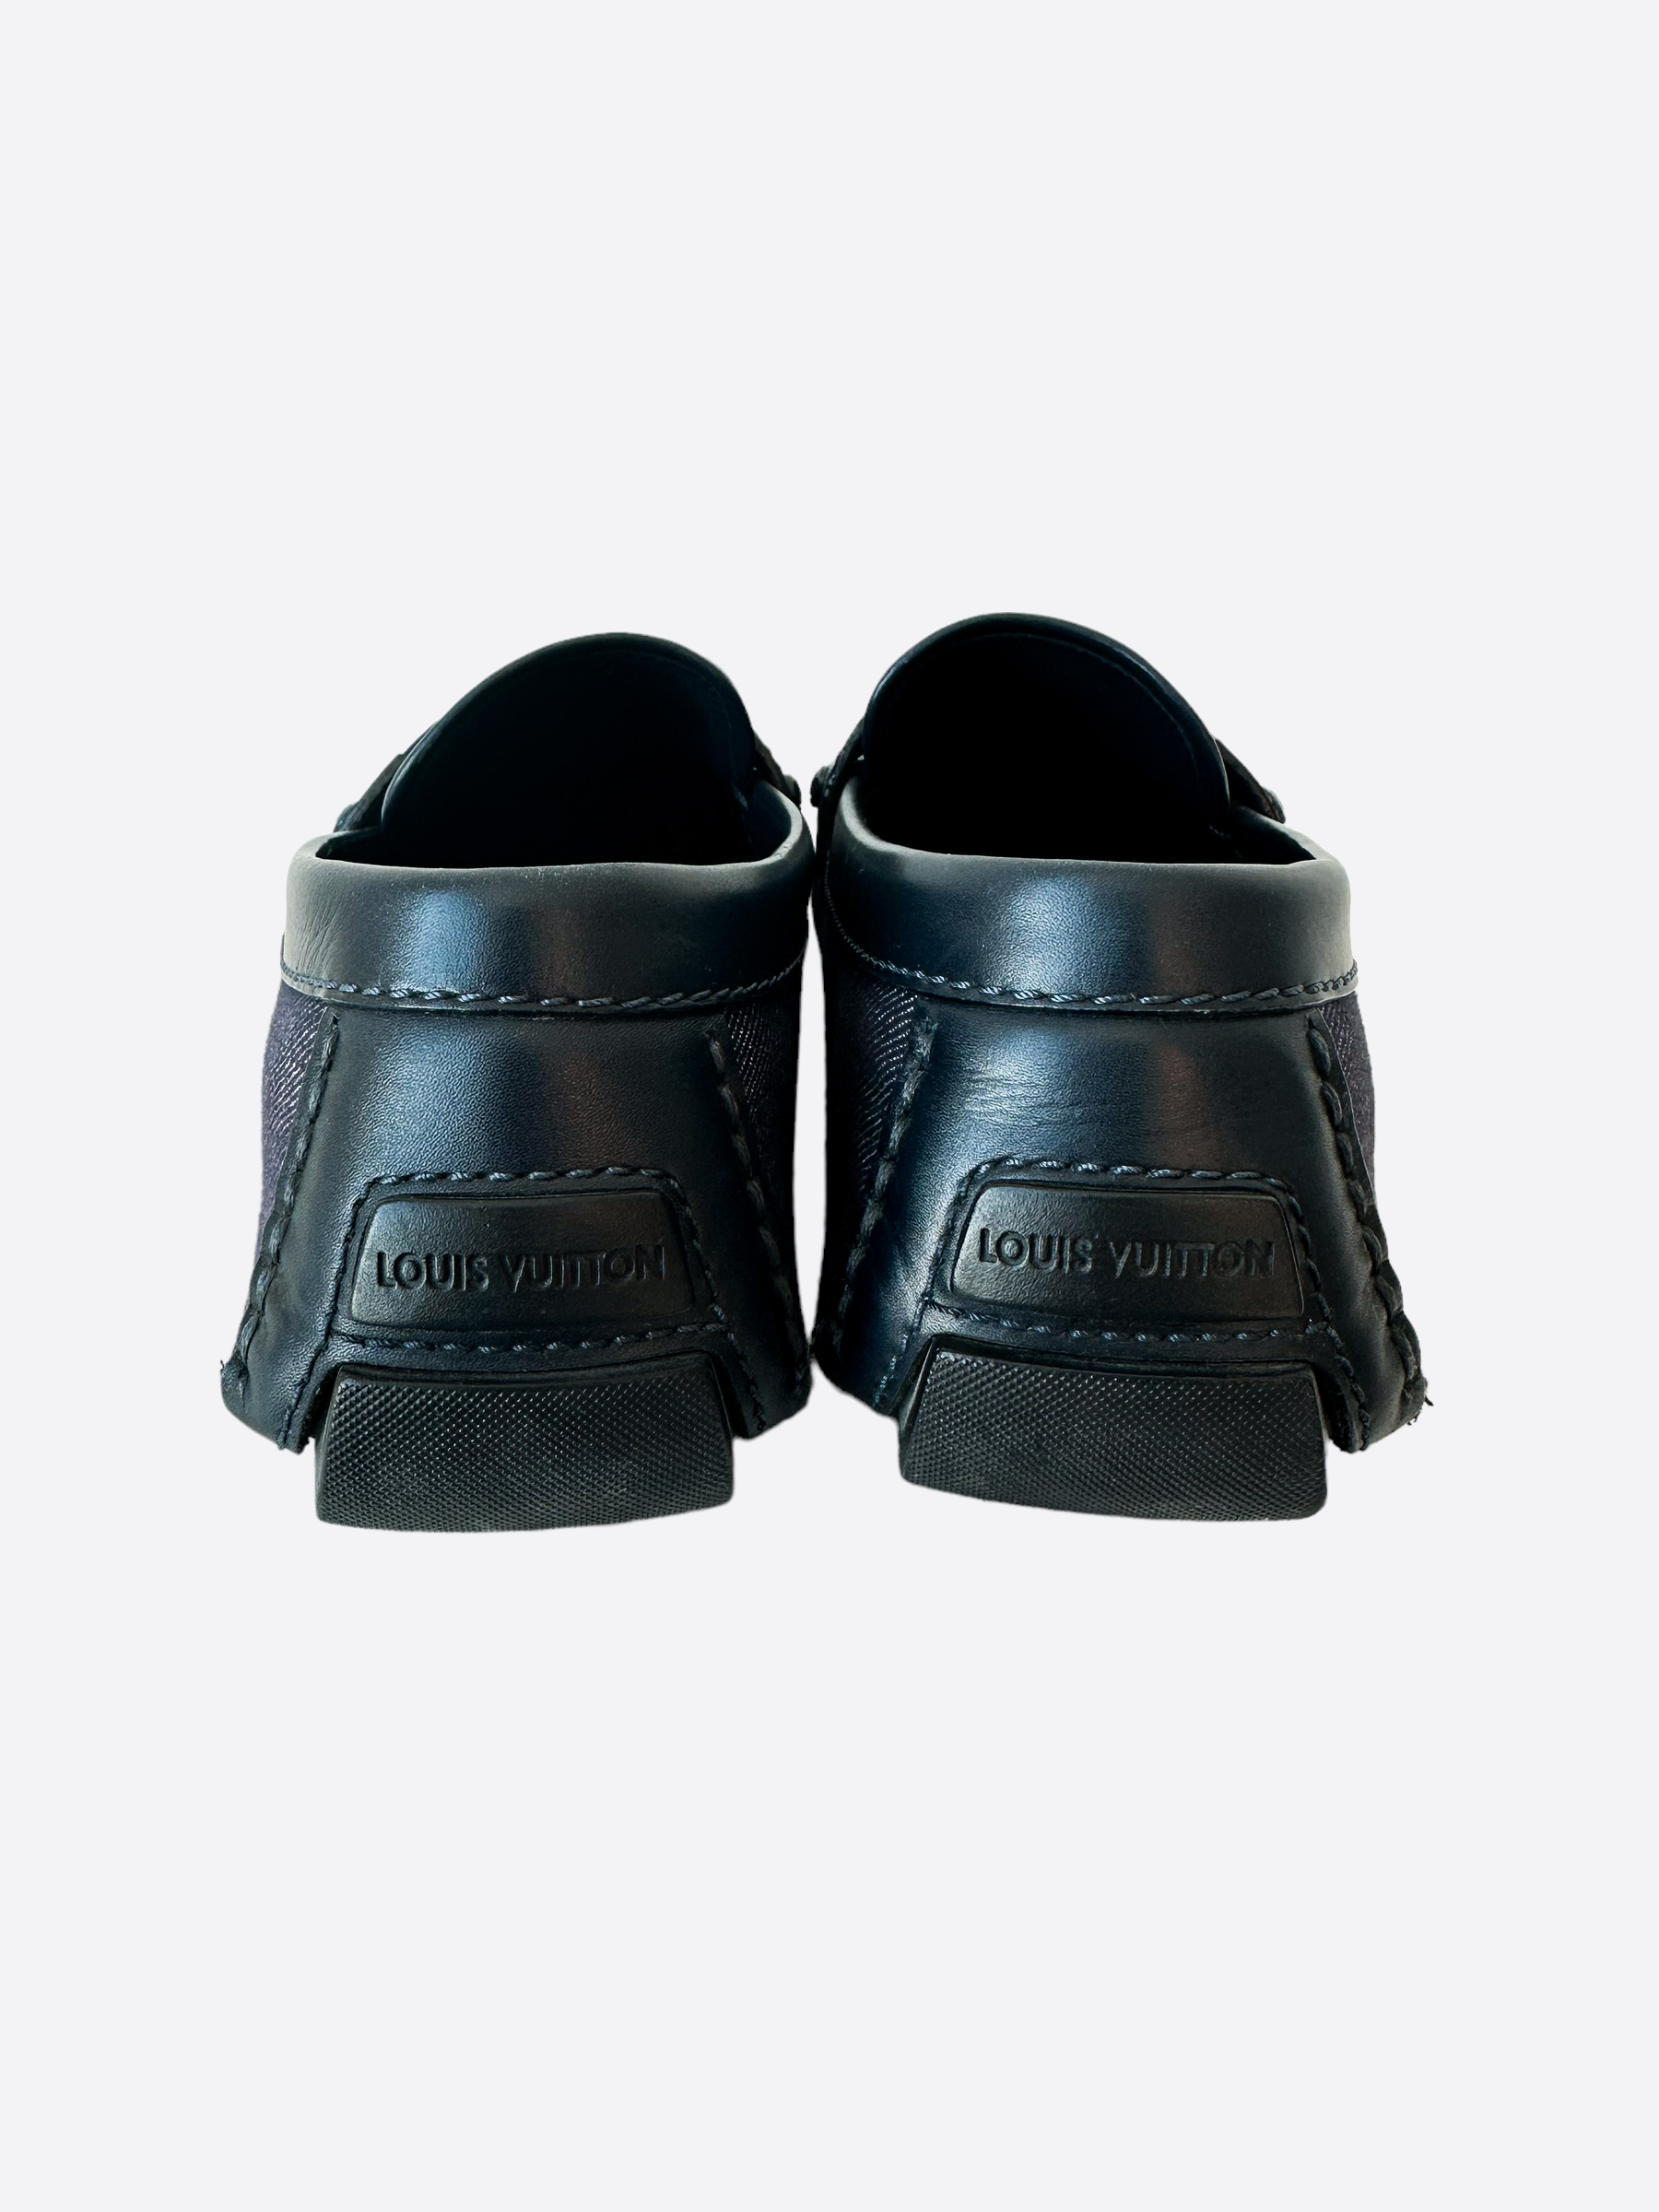 Louis Vuitton Men's Driving Loafers - Black